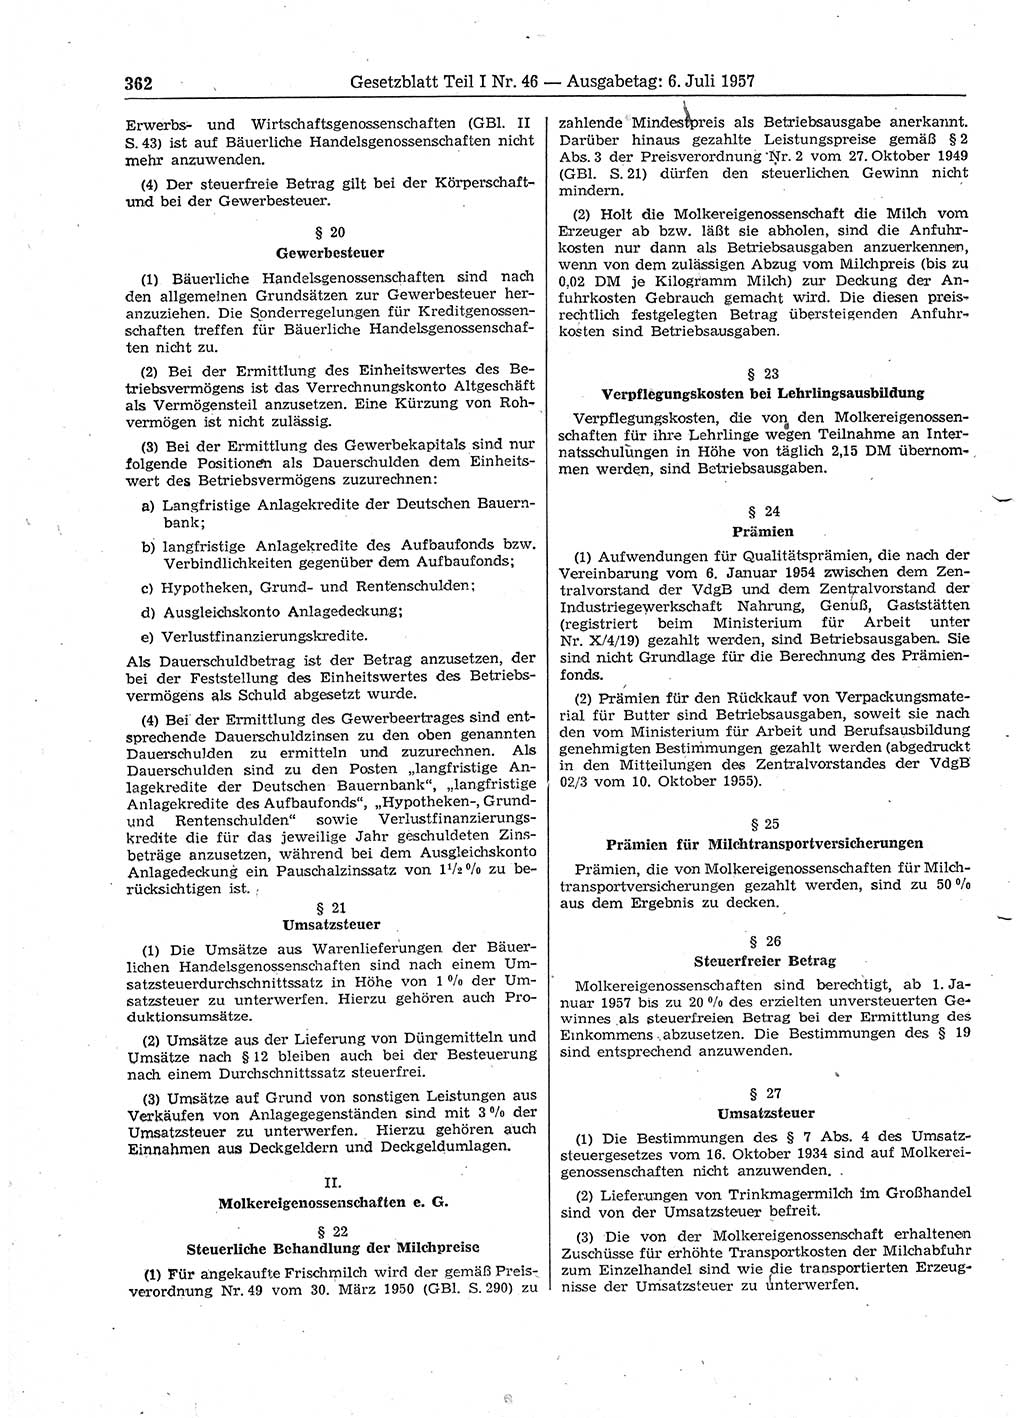 Gesetzblatt (GBl.) der Deutschen Demokratischen Republik (DDR) Teil Ⅰ 1957, Seite 362 (GBl. DDR Ⅰ 1957, S. 362)